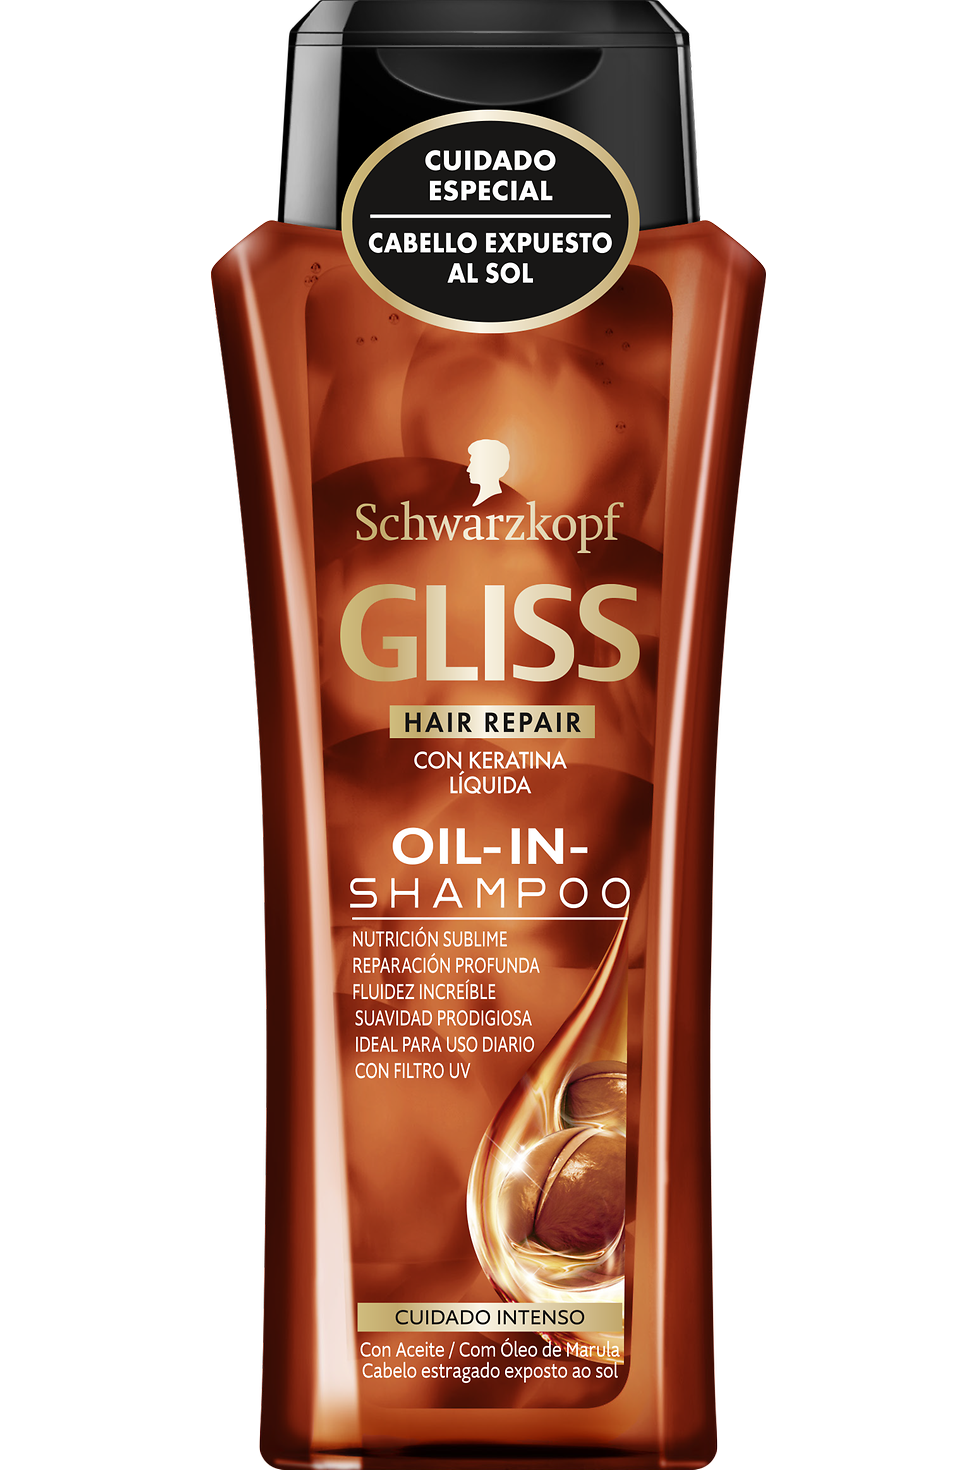 Nuevo Gliss Oil-In-Shampoo Cuidado Intenso